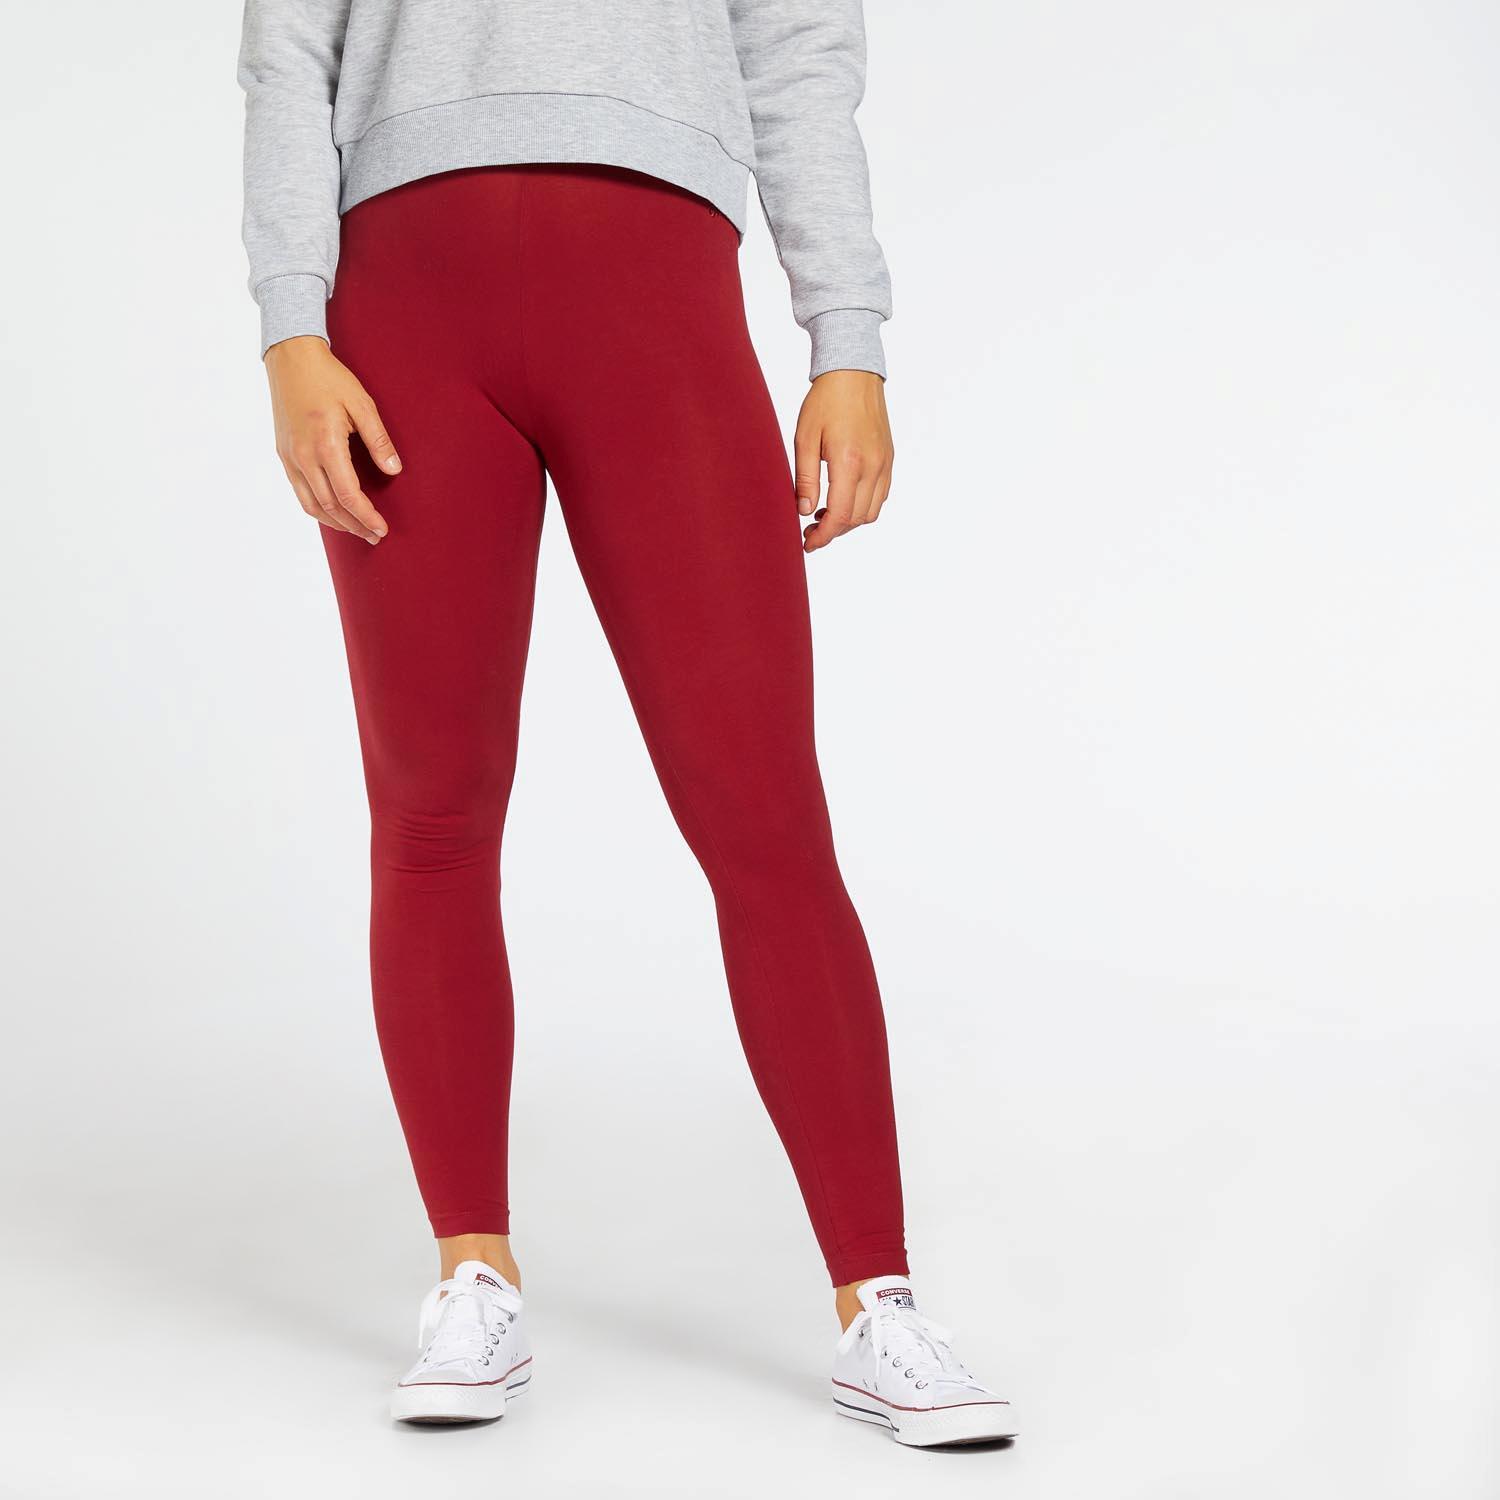 Up Basics - Rouge-Legging femme sports taille XL